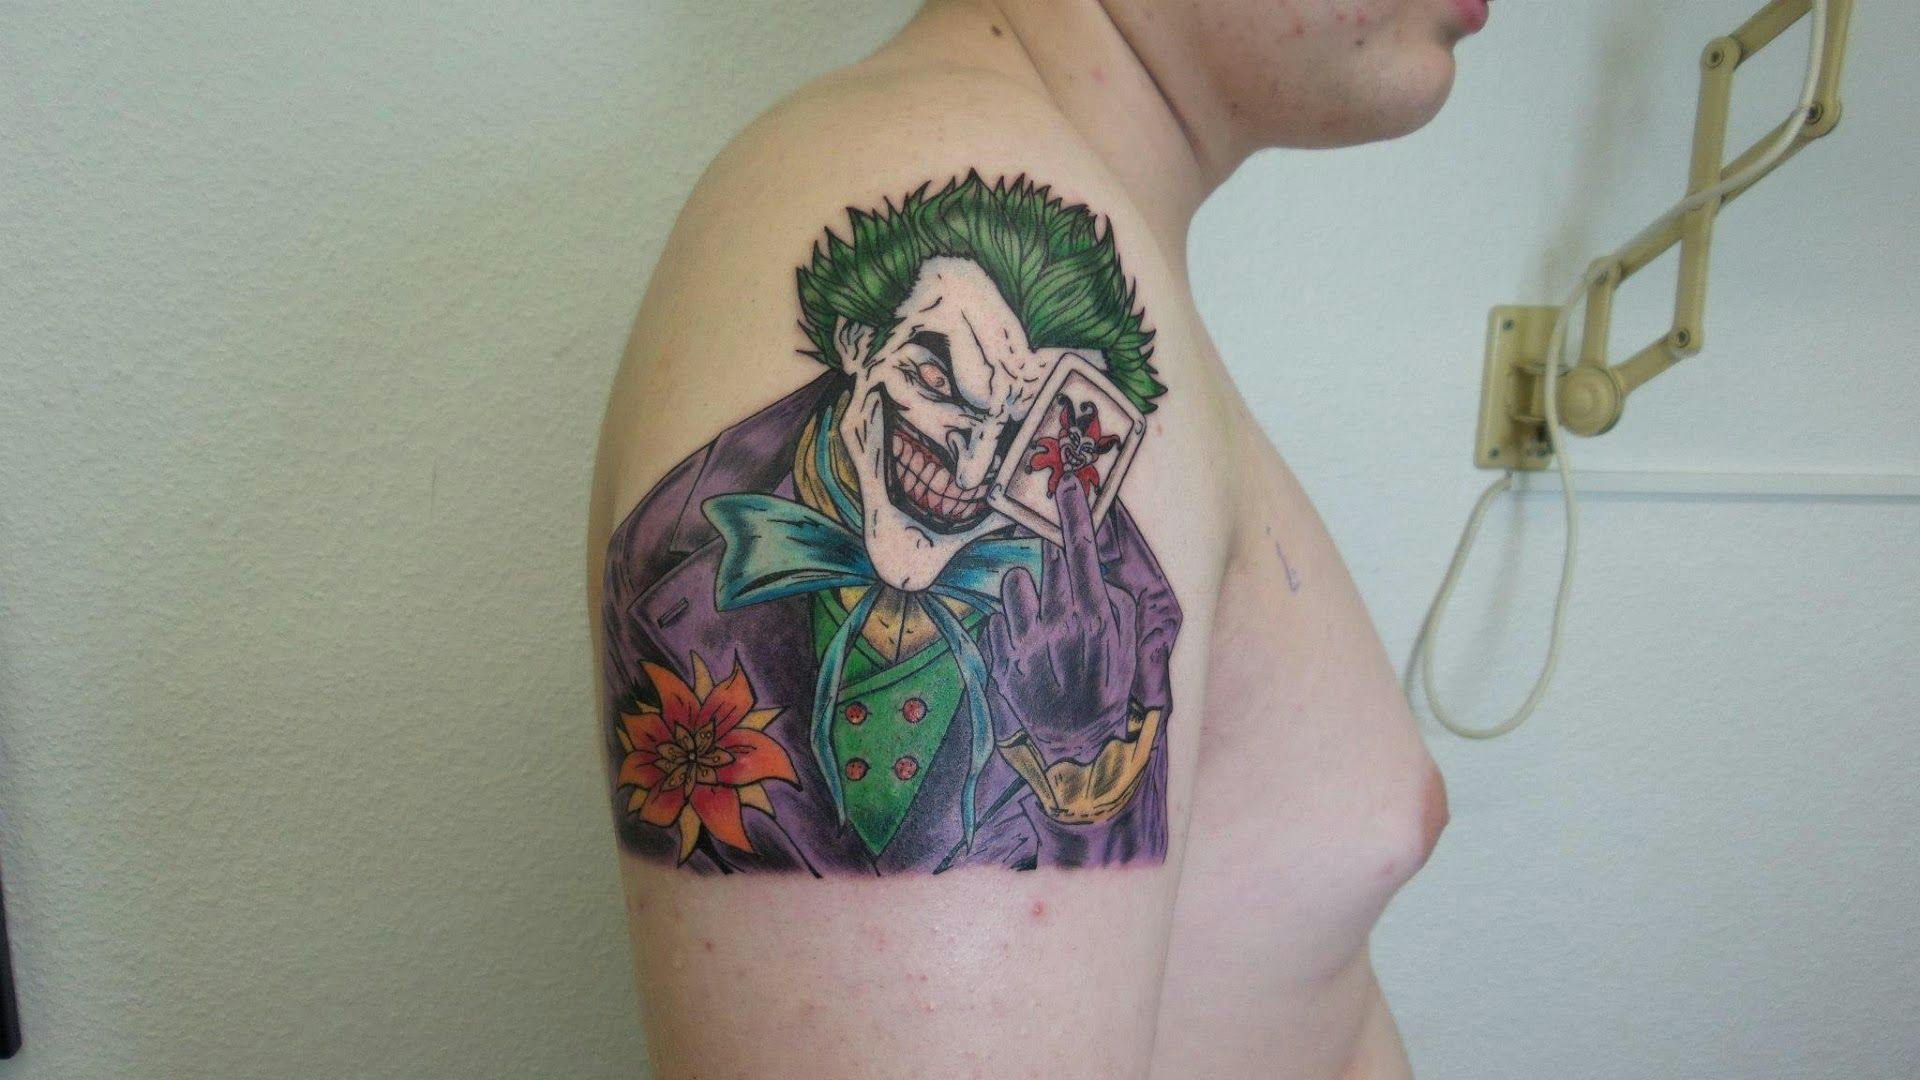 joker japanische tattoos in leipzig on shoulder, aschaffenburg, germany